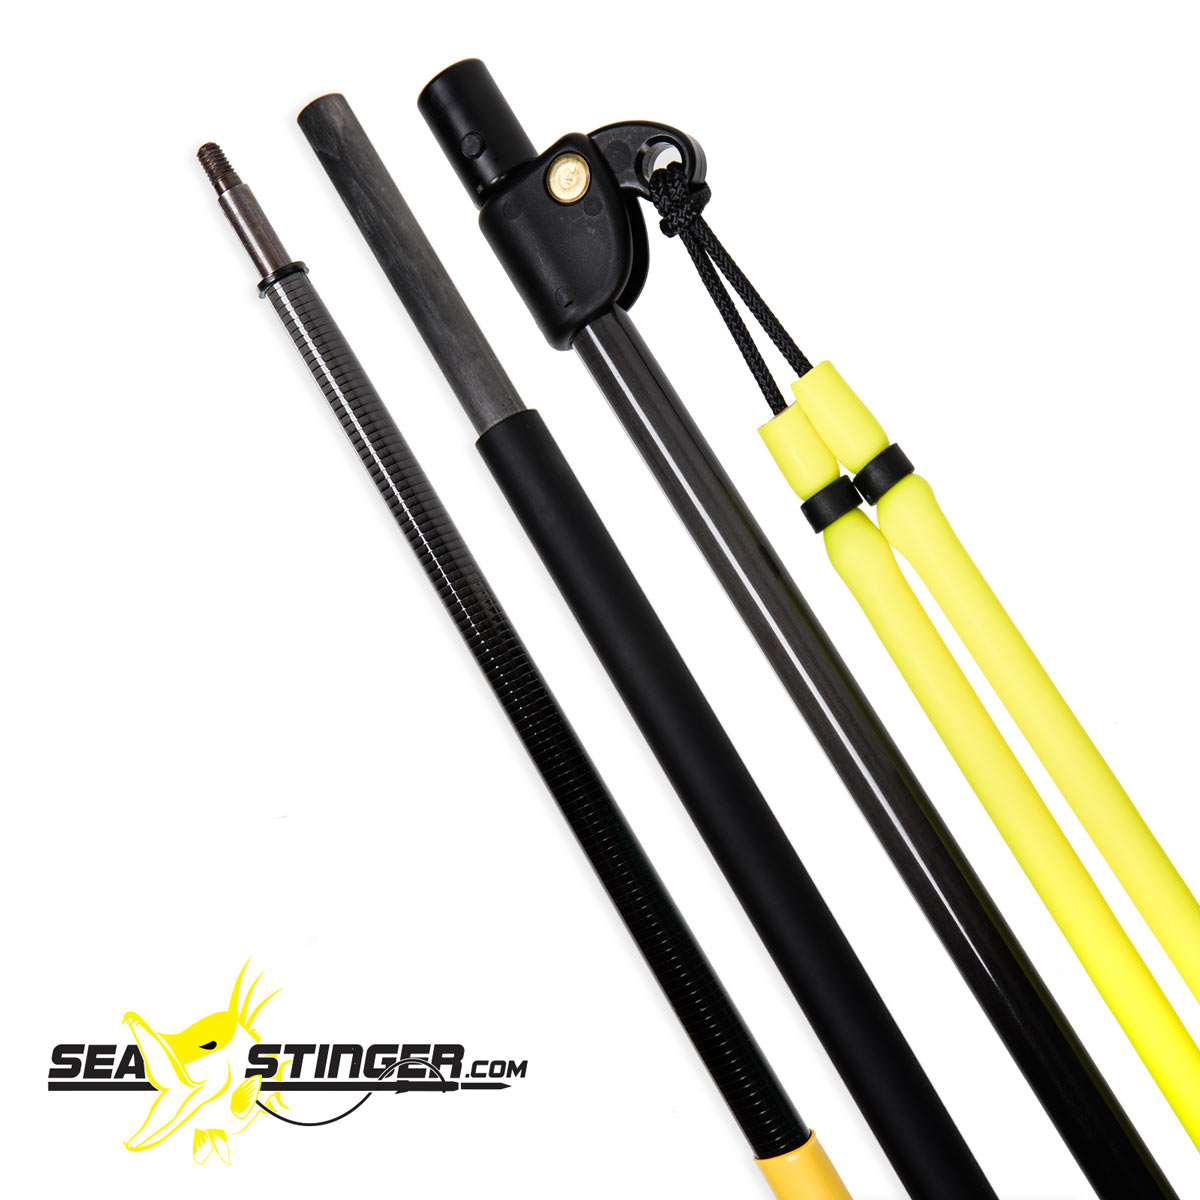 Buy Spear Fishing Pole online